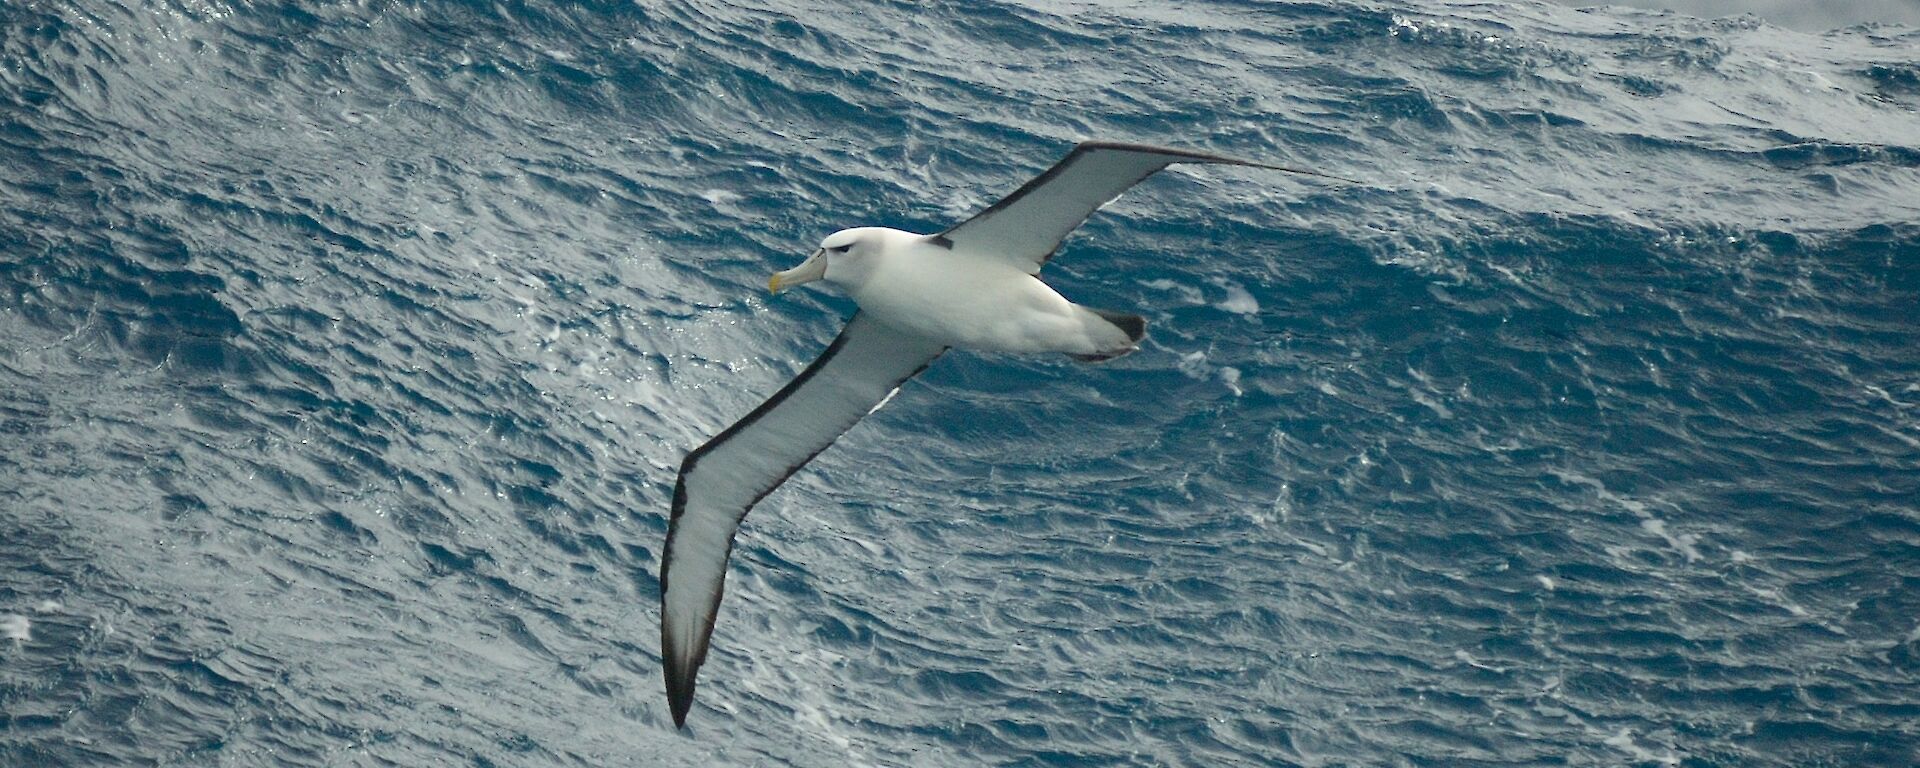 An albatross flies above the water’s surface